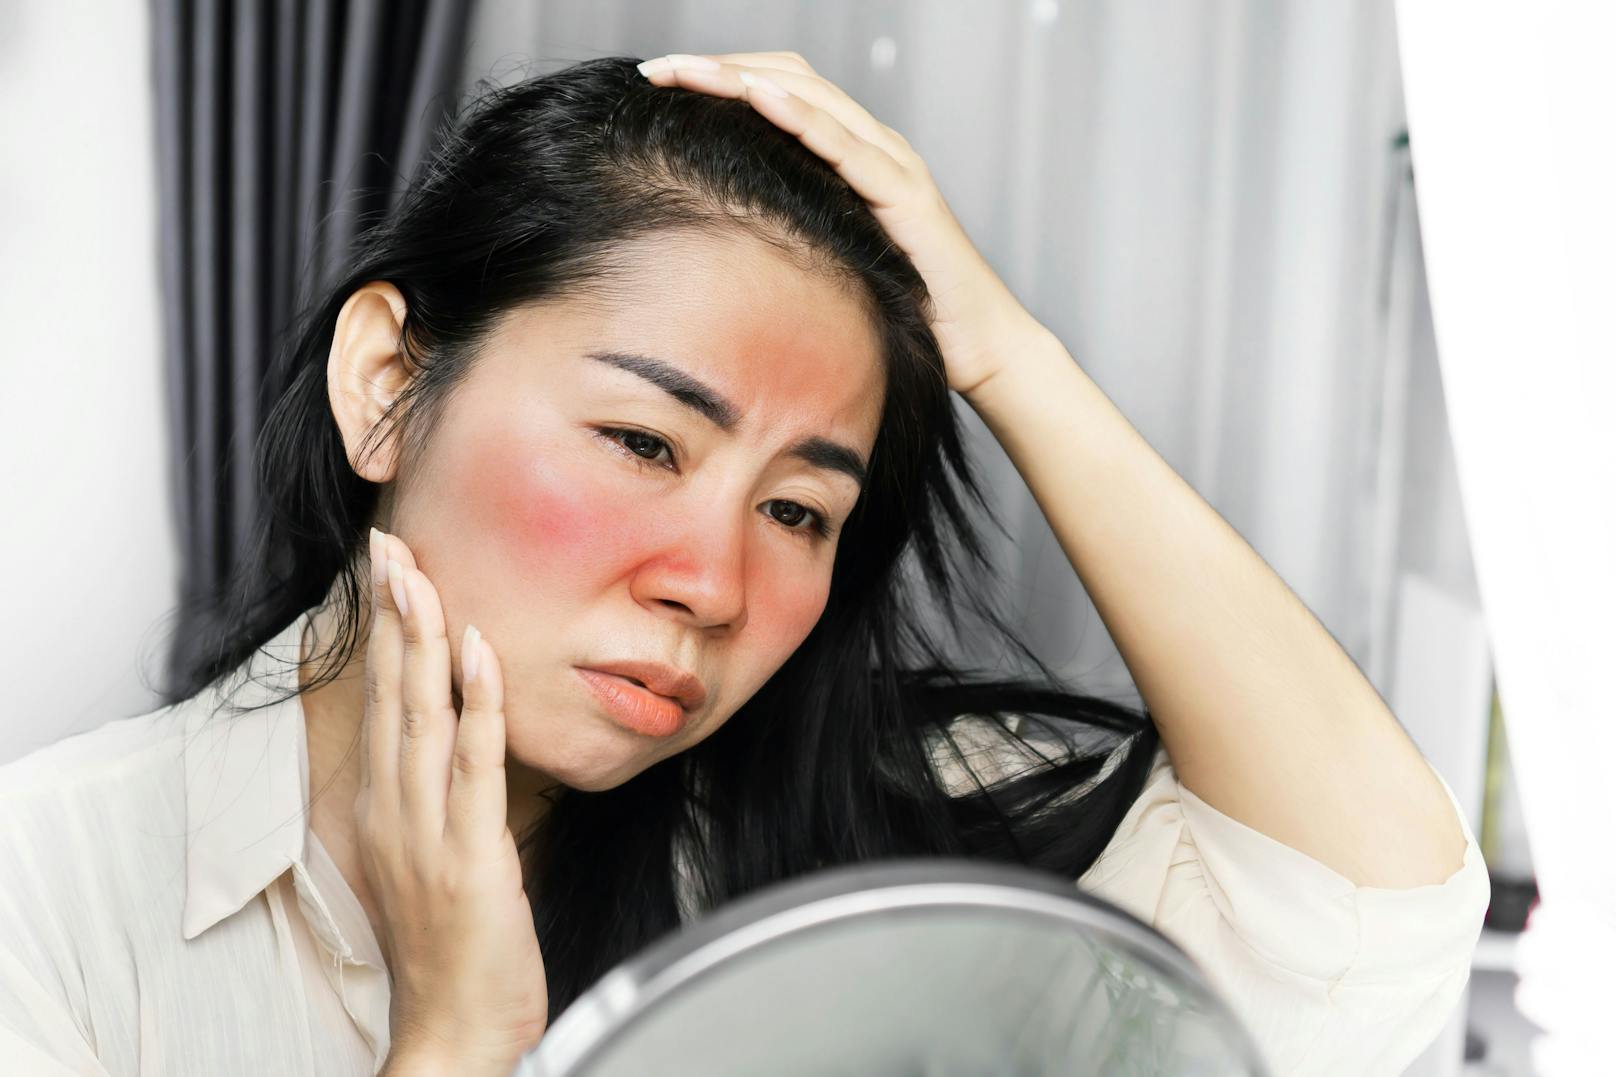 Ein Sonnenbrand im Gesicht? Mit diesem Beauty-Trend auch ohne&nbsp;gefährliche UV-Strahlung möglich.